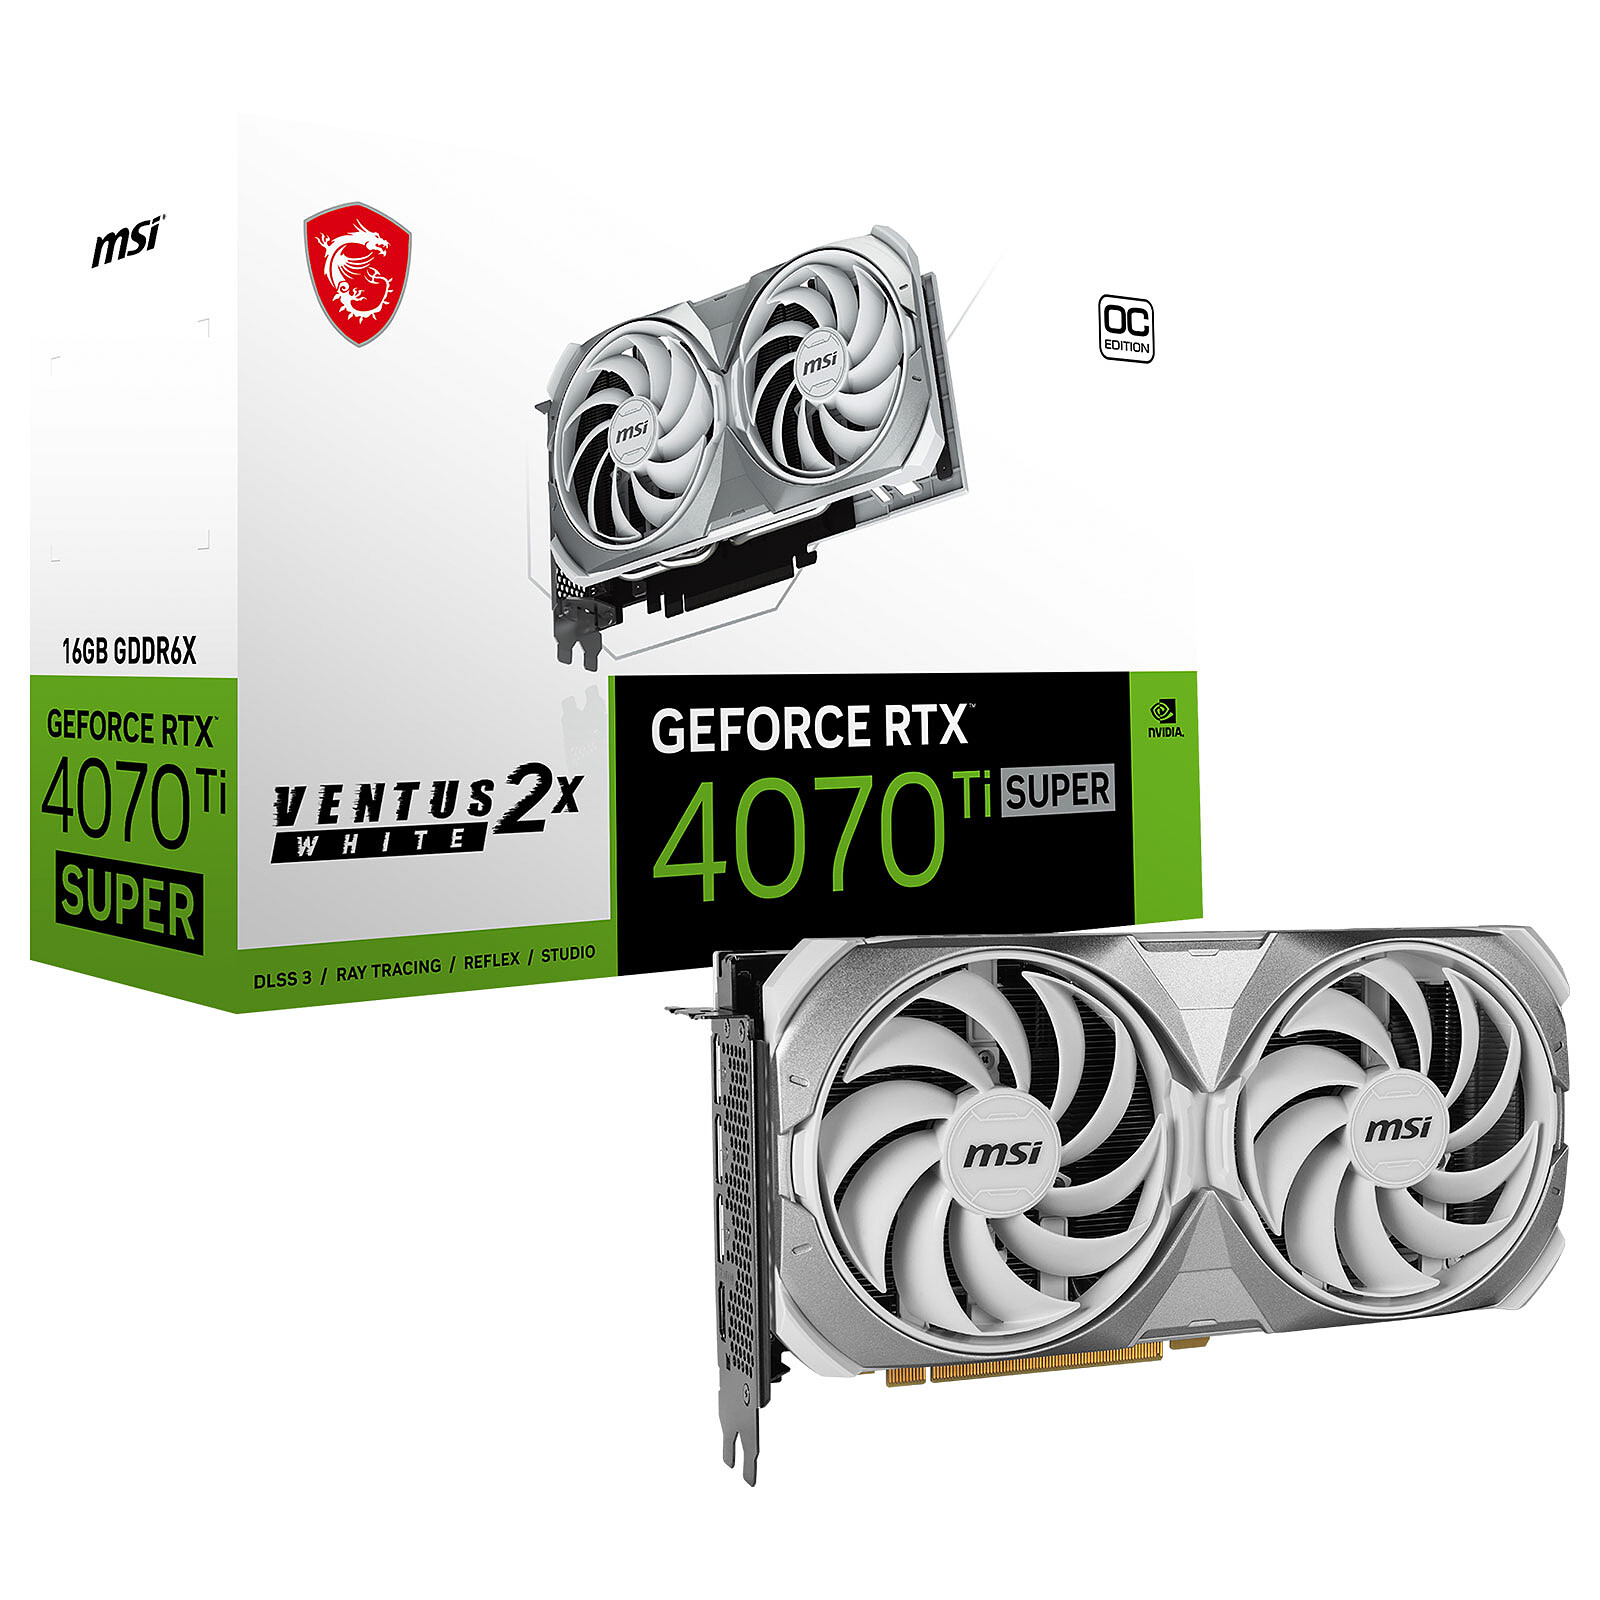 Nvidia GeForce RTX 4070 Ti : meilleur prix, fiche technique et